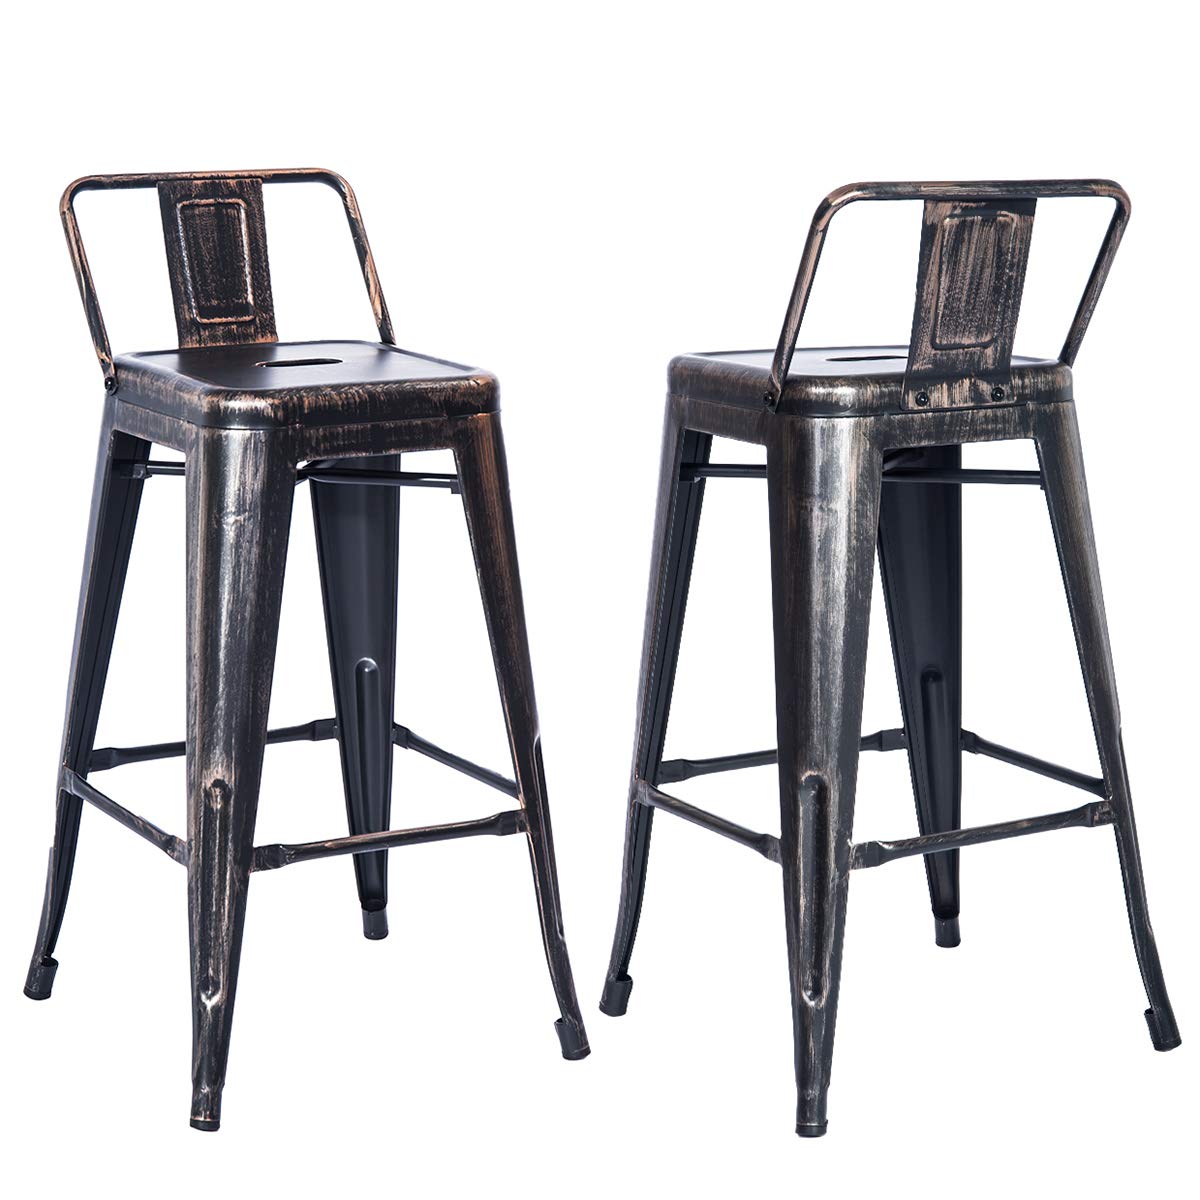 TREXM Low Back Indoor and Outdoor Metal Chair Barstool Set of 2 (Golden Black)-CASAINC